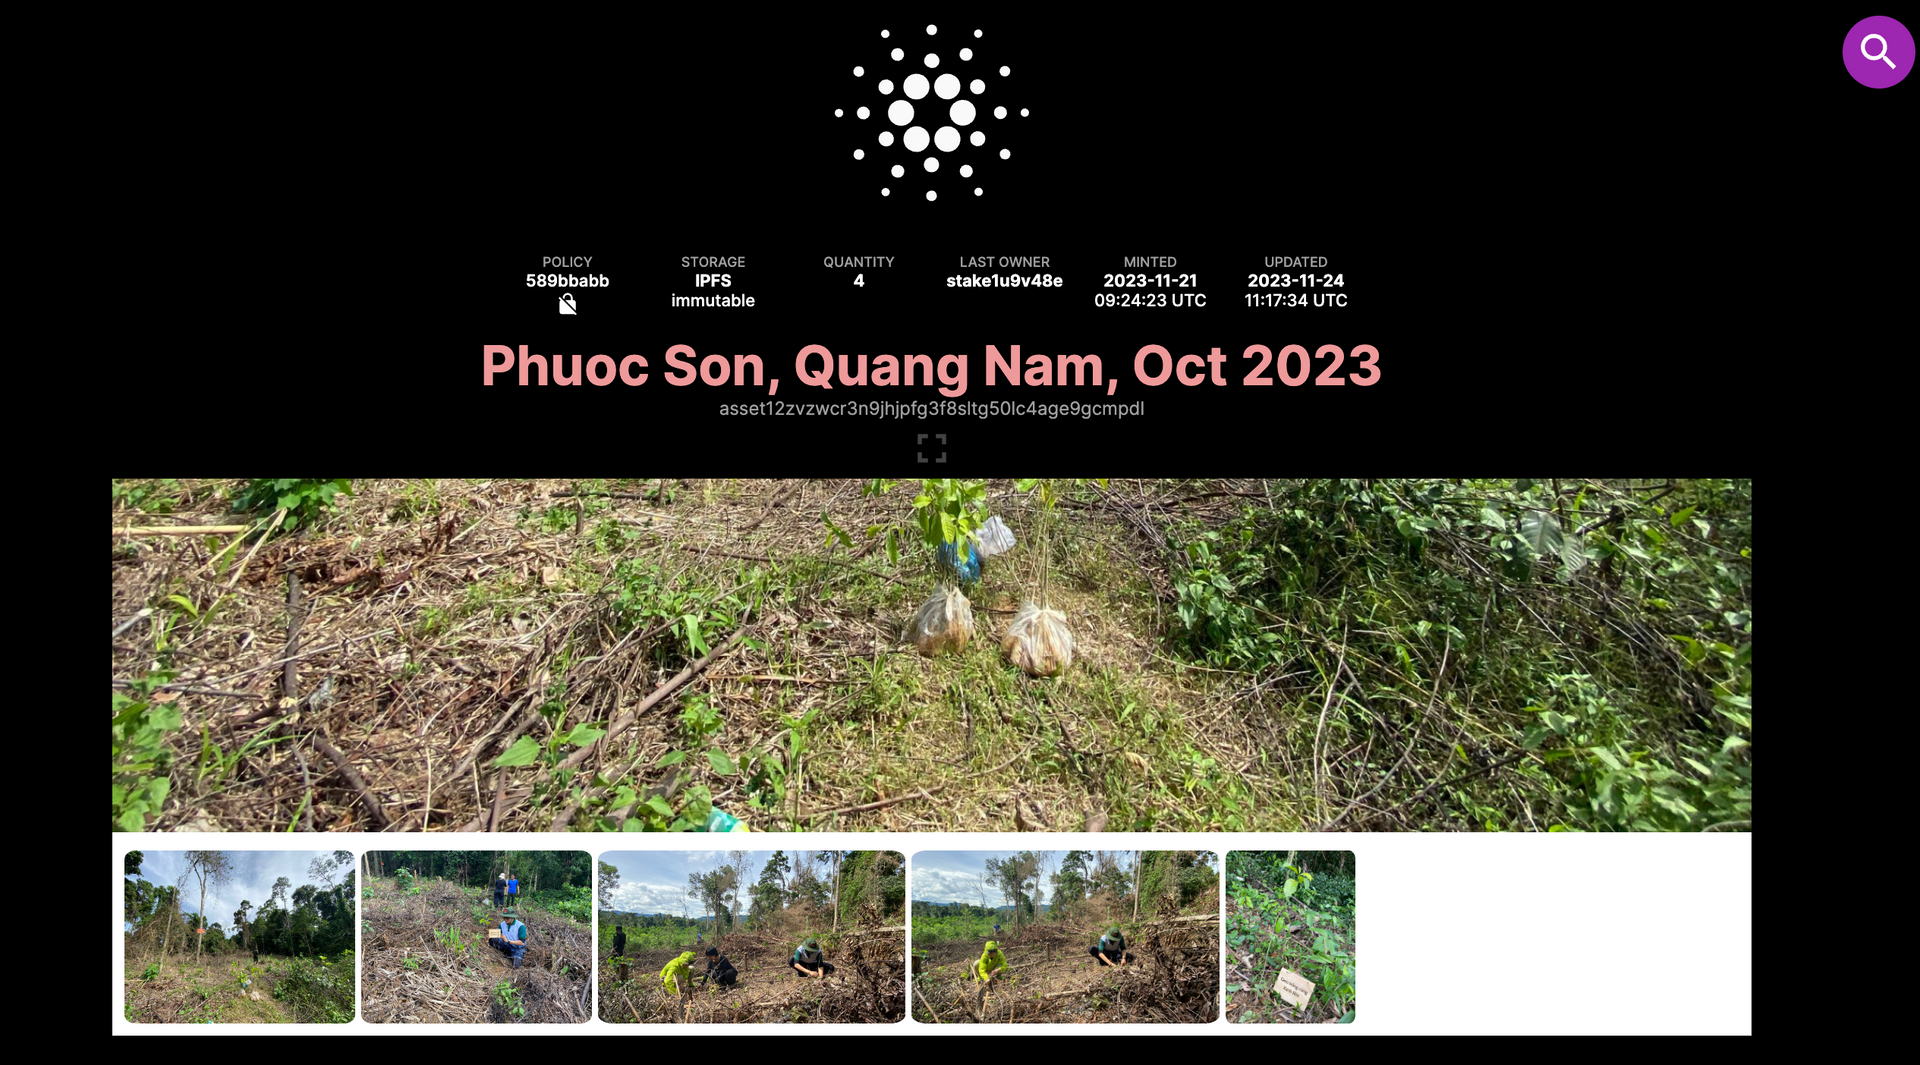 Hình ảnh dự án trồng rừng ở Phước Sơn. Ảnh: PHAN VINH